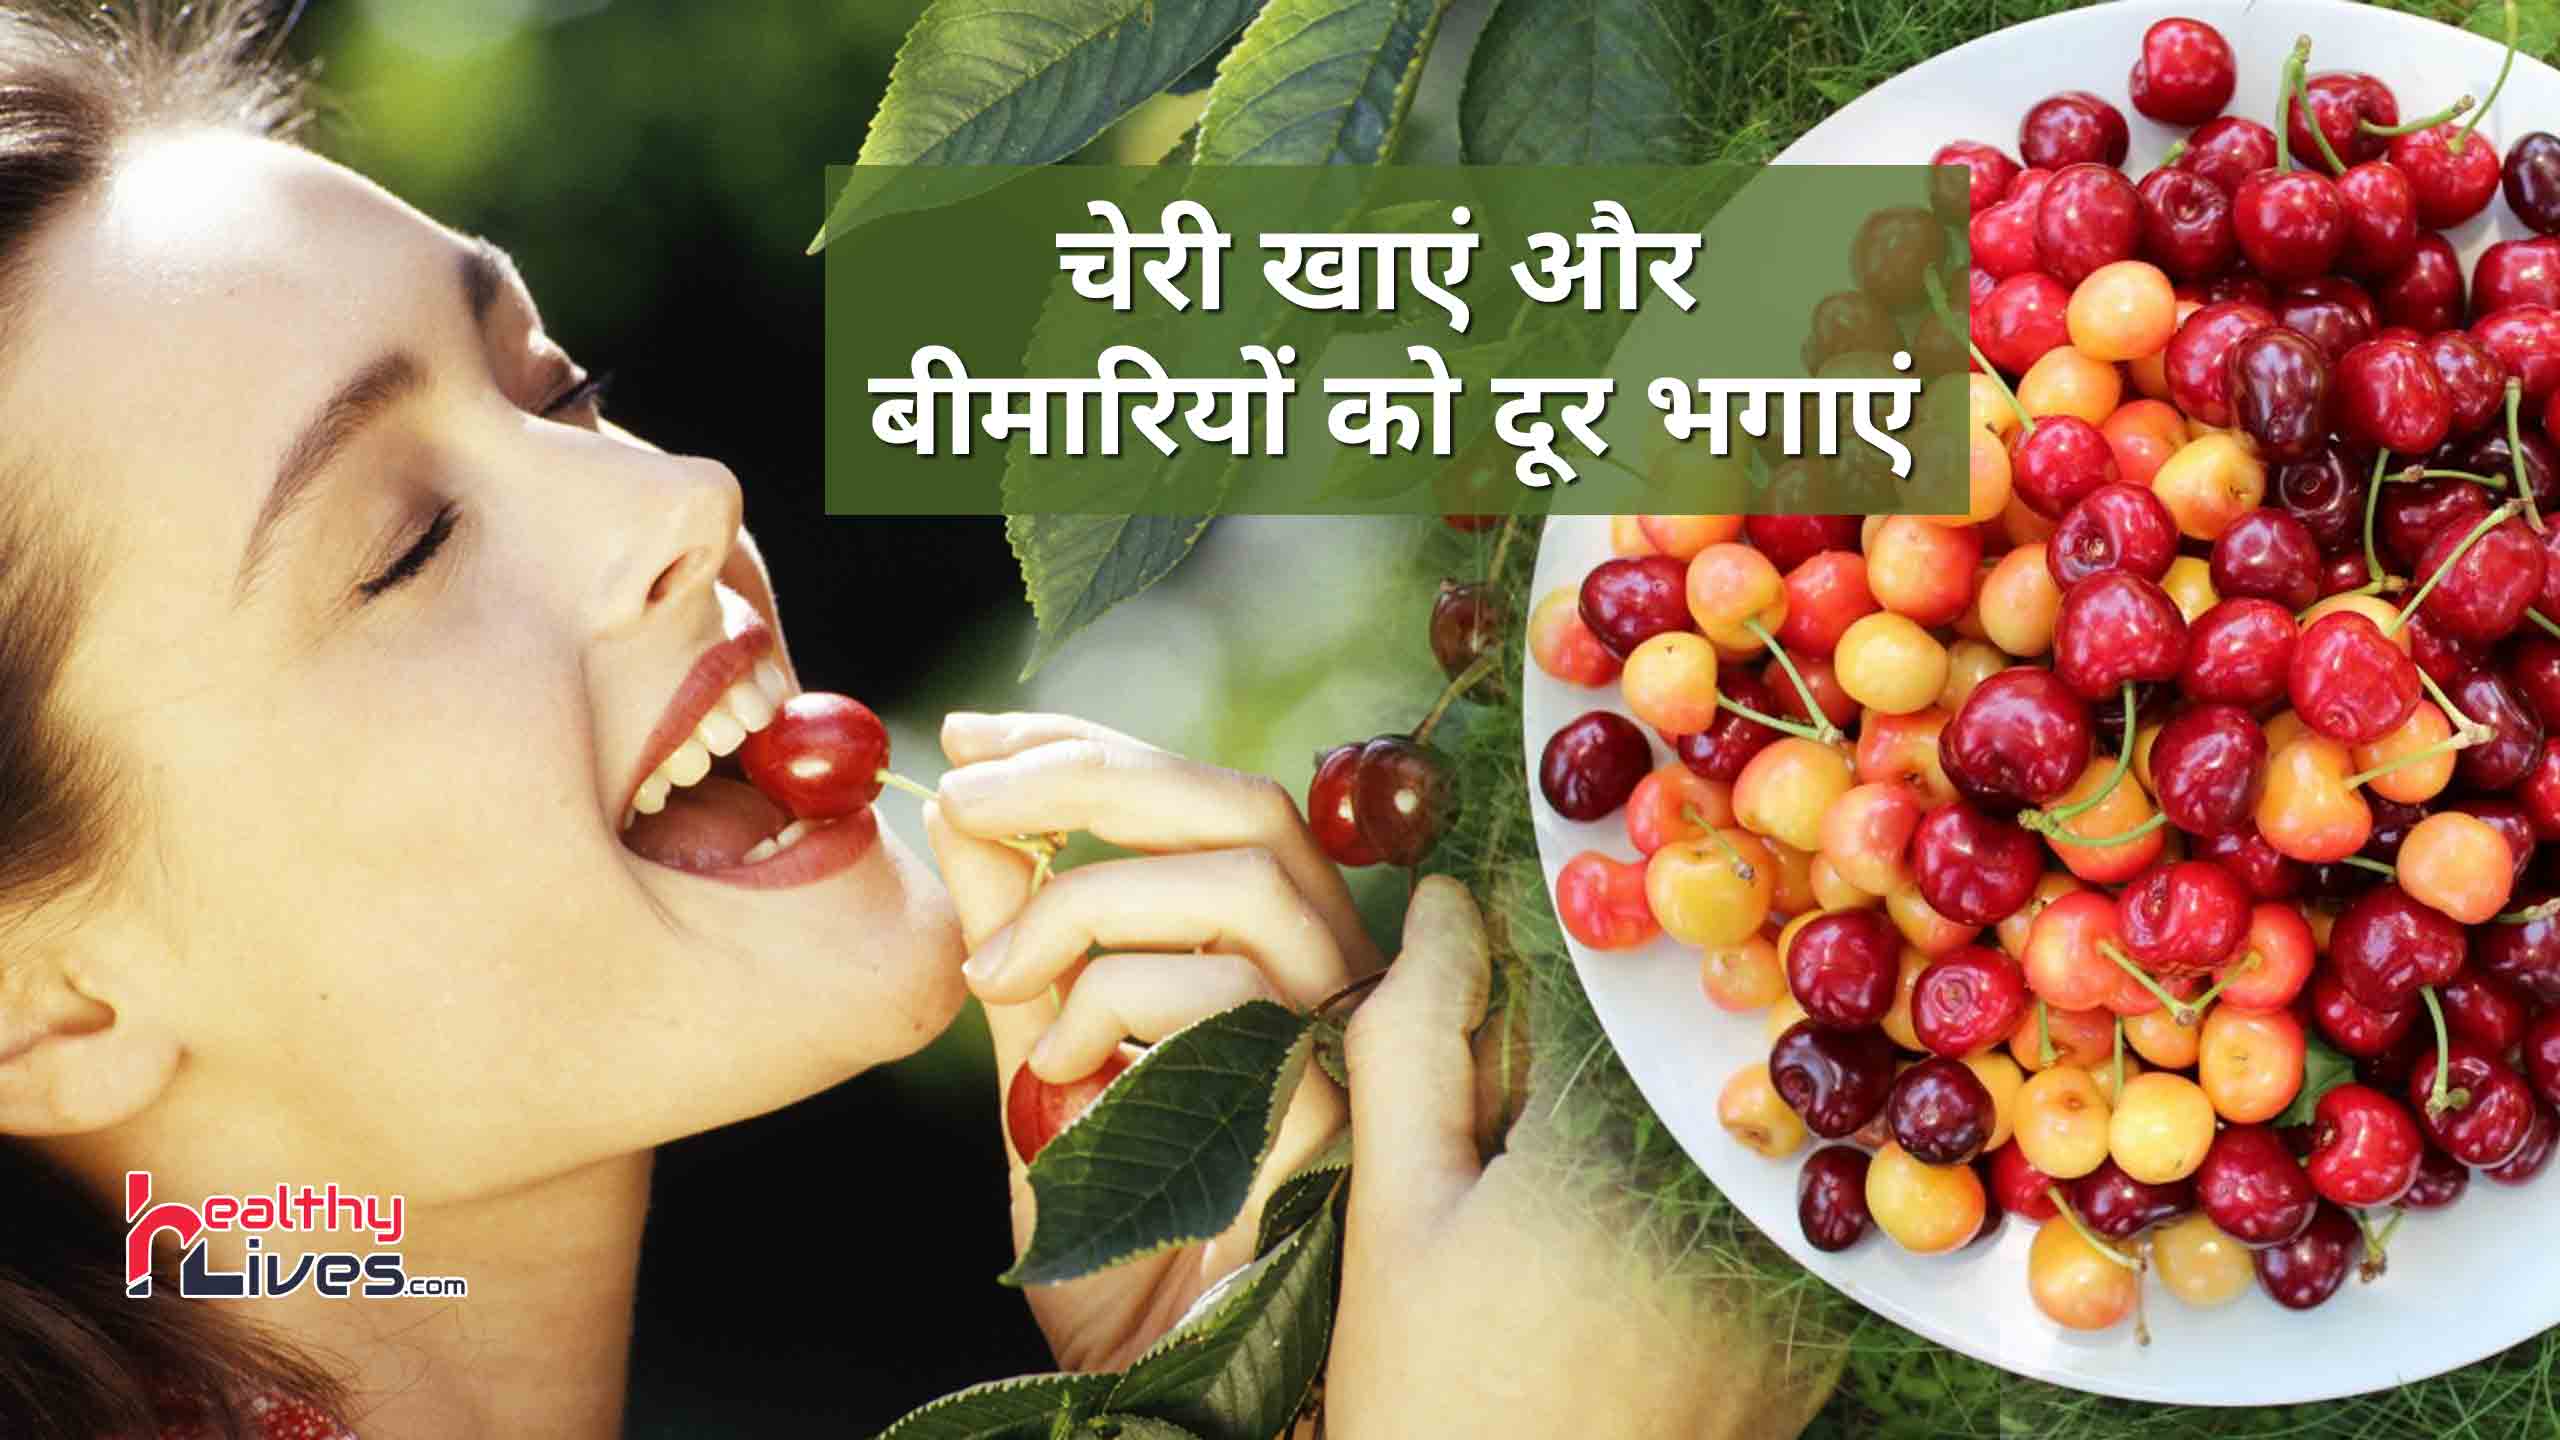 Benefits of Cherries: गुणकारी चेरी को खाने से मिलते हैं अनेक फायदे